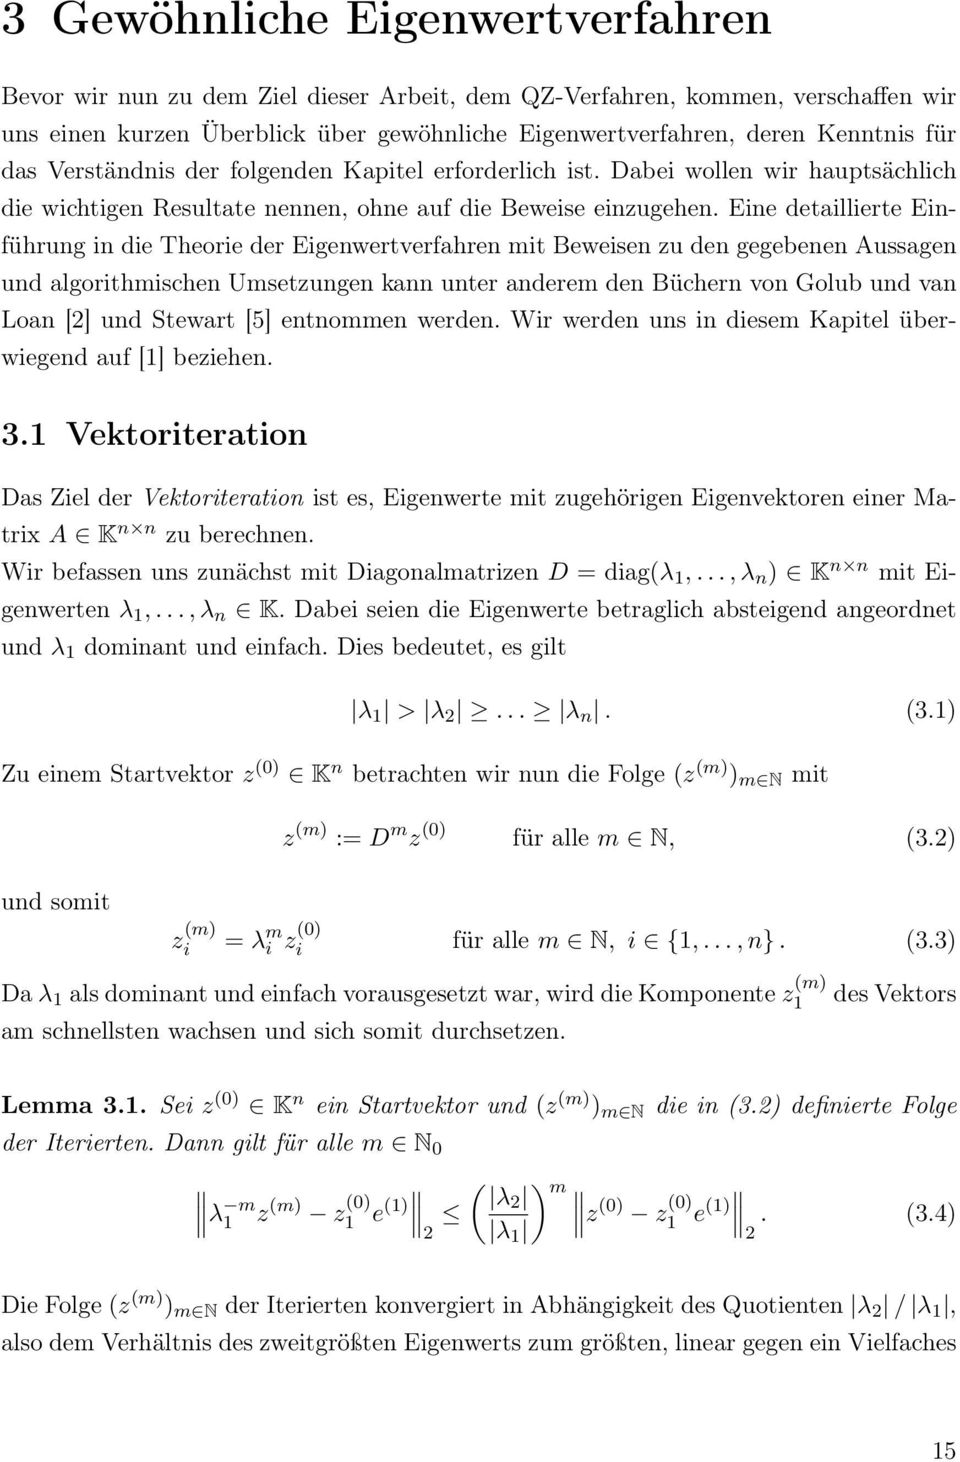 Eine detaillierte Einführung in die Theorie der Eigenwertverfahren mit Beweisen zu den gegebenen Aussagen und algorithmischen Umsetzungen kann unter anderem den Büchern von Golub und van Loan [2] und